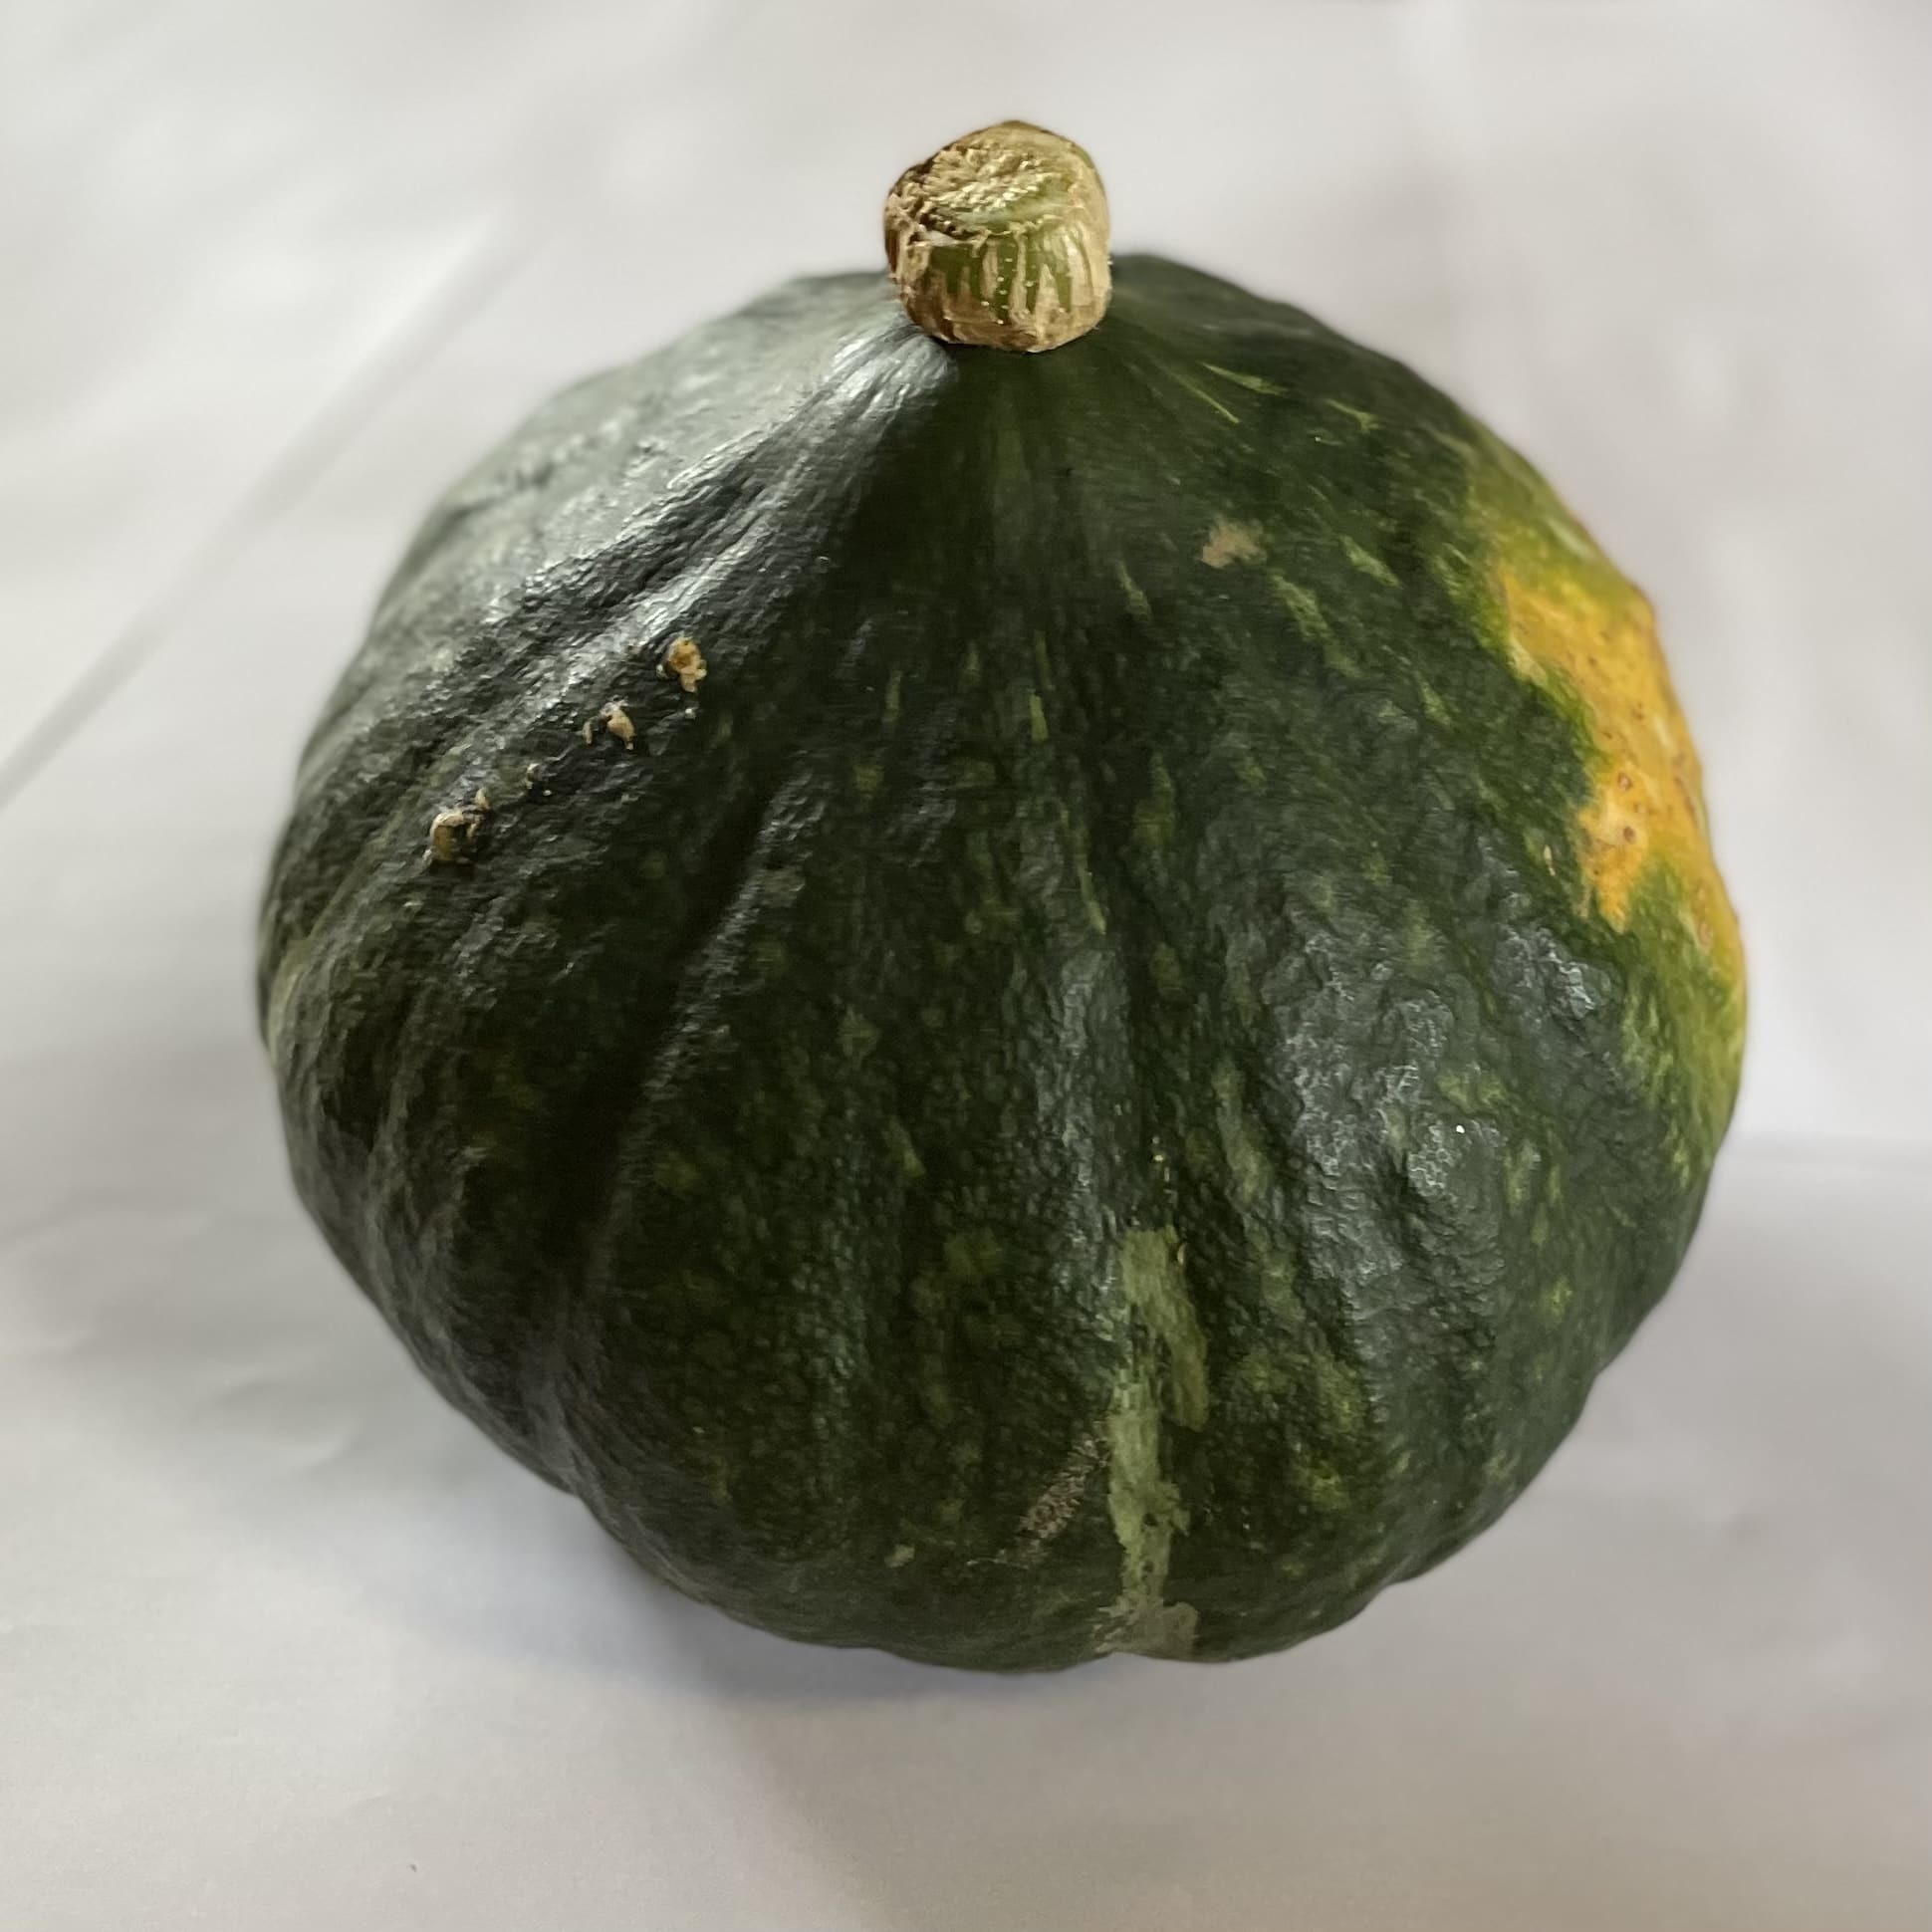 佐渡小木産無農薬「かぼちゃ」1.85~2.15kg